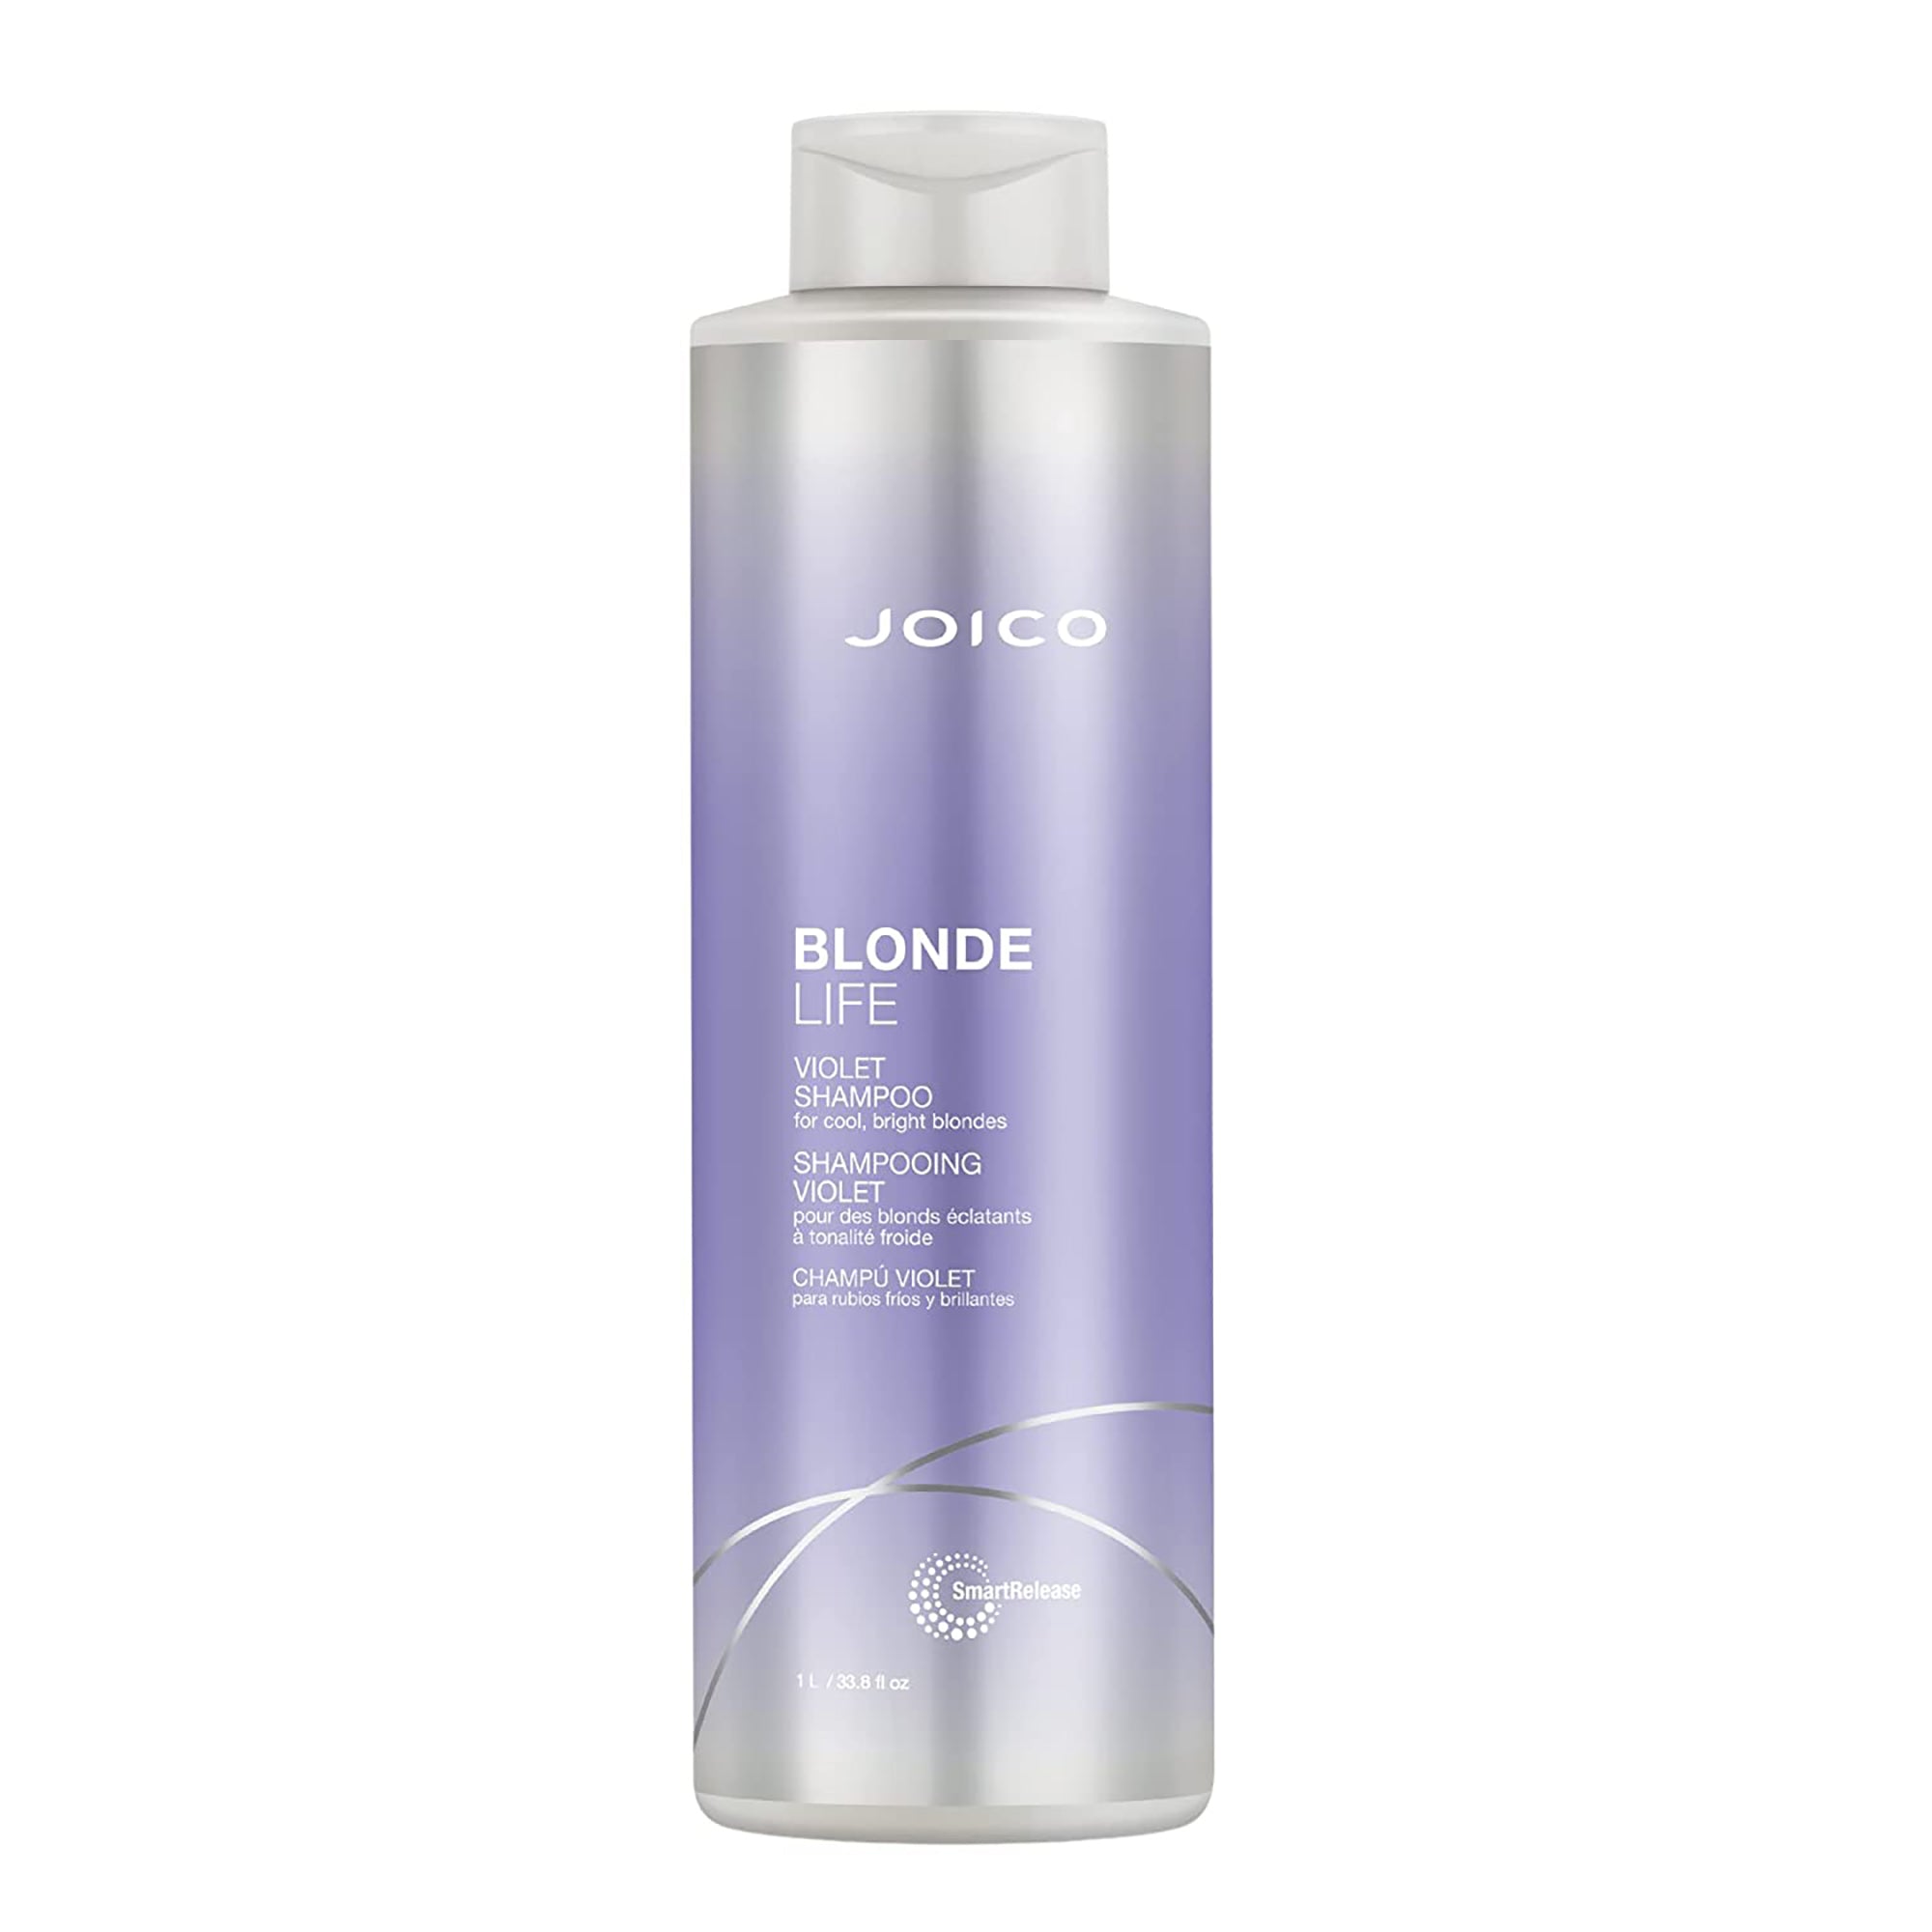 Joico Blonde Life Violet Shampoo Liter / 33.OZ